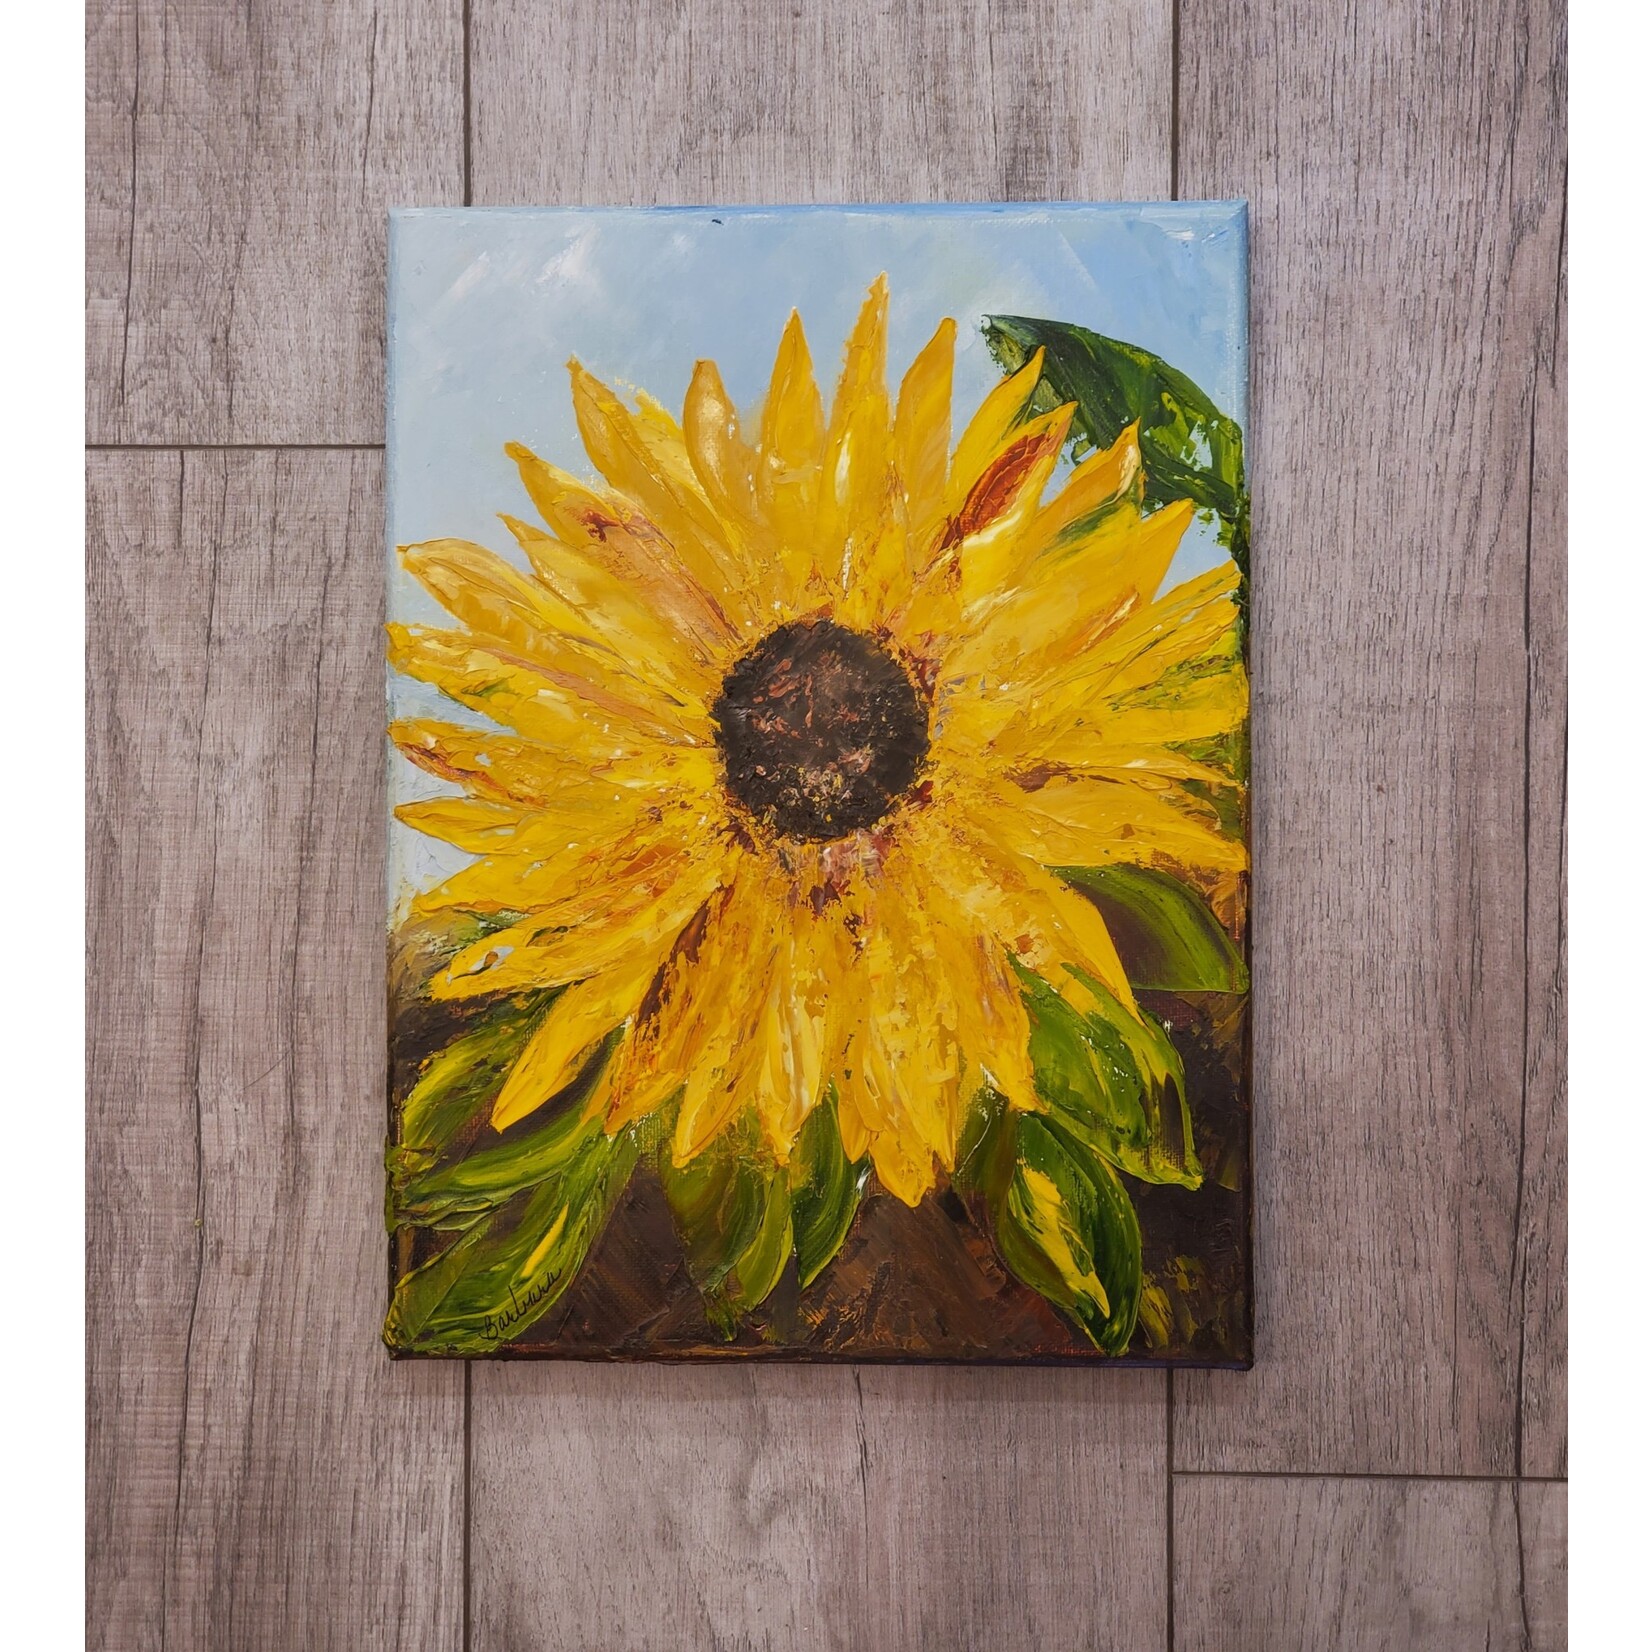 Barb Moniot "Rustic Sunflower" - original oil painting